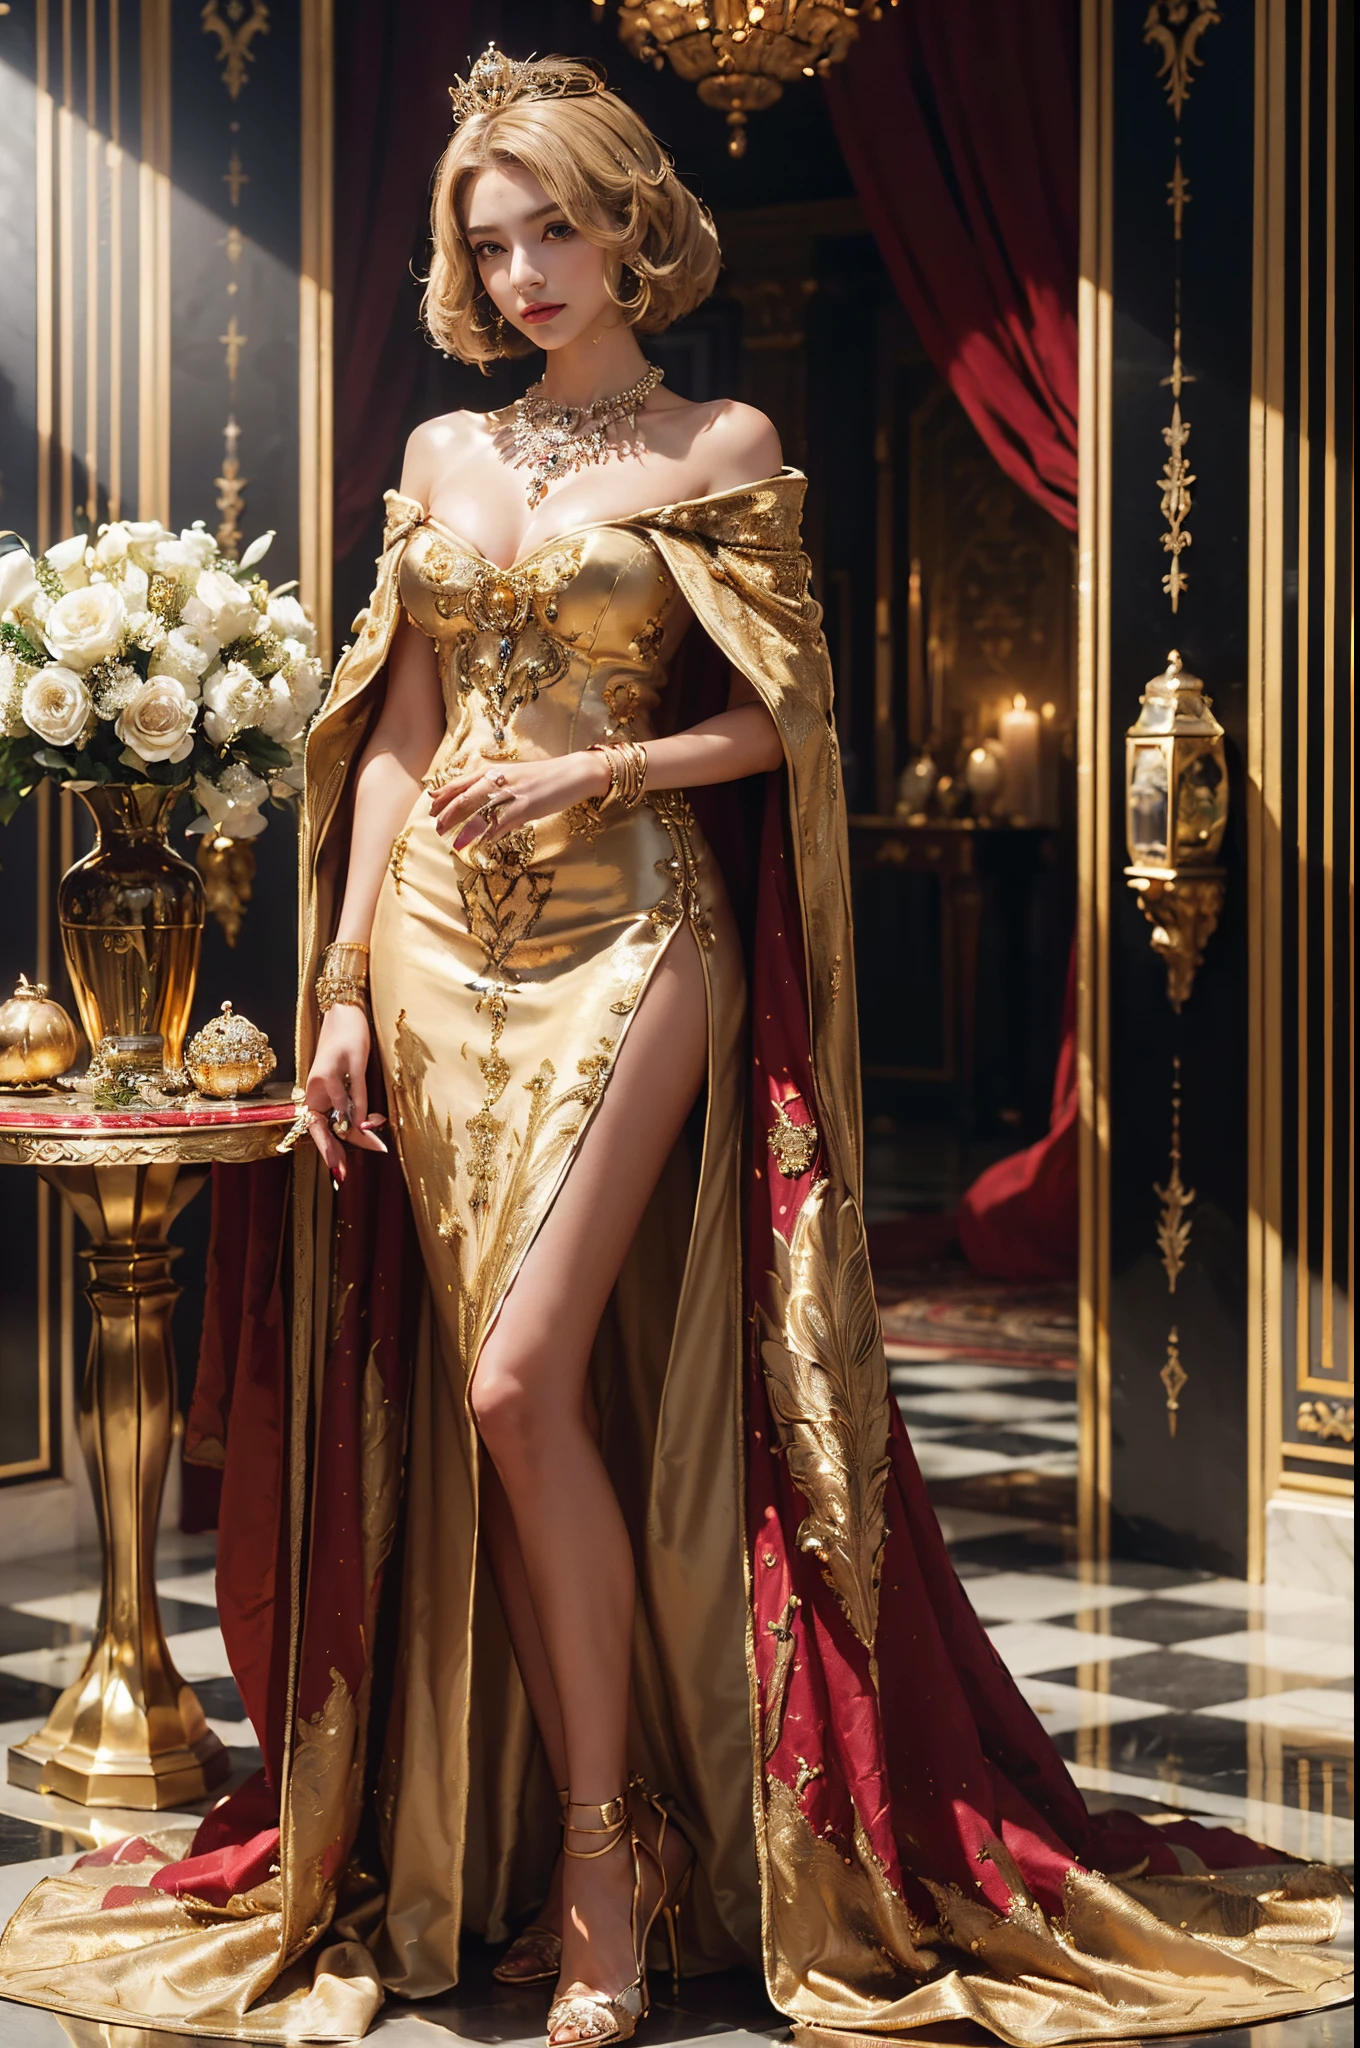 (schöne Königin, mittellanges Bob-Haar, Stand in der King&#39;s Hall, (Luxus-Krone), (Luxus-Umhang), Tragen (detaillierte luxuriöse Haarnadel), (Detail Luxus Königin Kleid), (Luxus High Heels), (detaillierte Verzierung), (Detailzubehör), teure detailreiche Halskette, goldene Blumenvase auf Luxustisch, Luxus-Parfümflasche, Luxuriöse Wanddekoration, Luxus-Fenster mit goldenem Rahmen, Luxus-Königssaal, Detail Luxus goldene Lampe, Luxuskerze, schönes Gesicht, hübsches Gesicht, schöne Augen, schöne Nase, Raytracing, schöne Finger, schöne Hände, (Luxus Armschmuck), (Luxus-Armband), (Luxus-Ring), (Luxus Halskette), (4 Finger in 1 Hand), Ganzkörperbild, hübsches Make-up, perfekte Anatomie, gute Beleuchtung, professionelles Fotoshooting